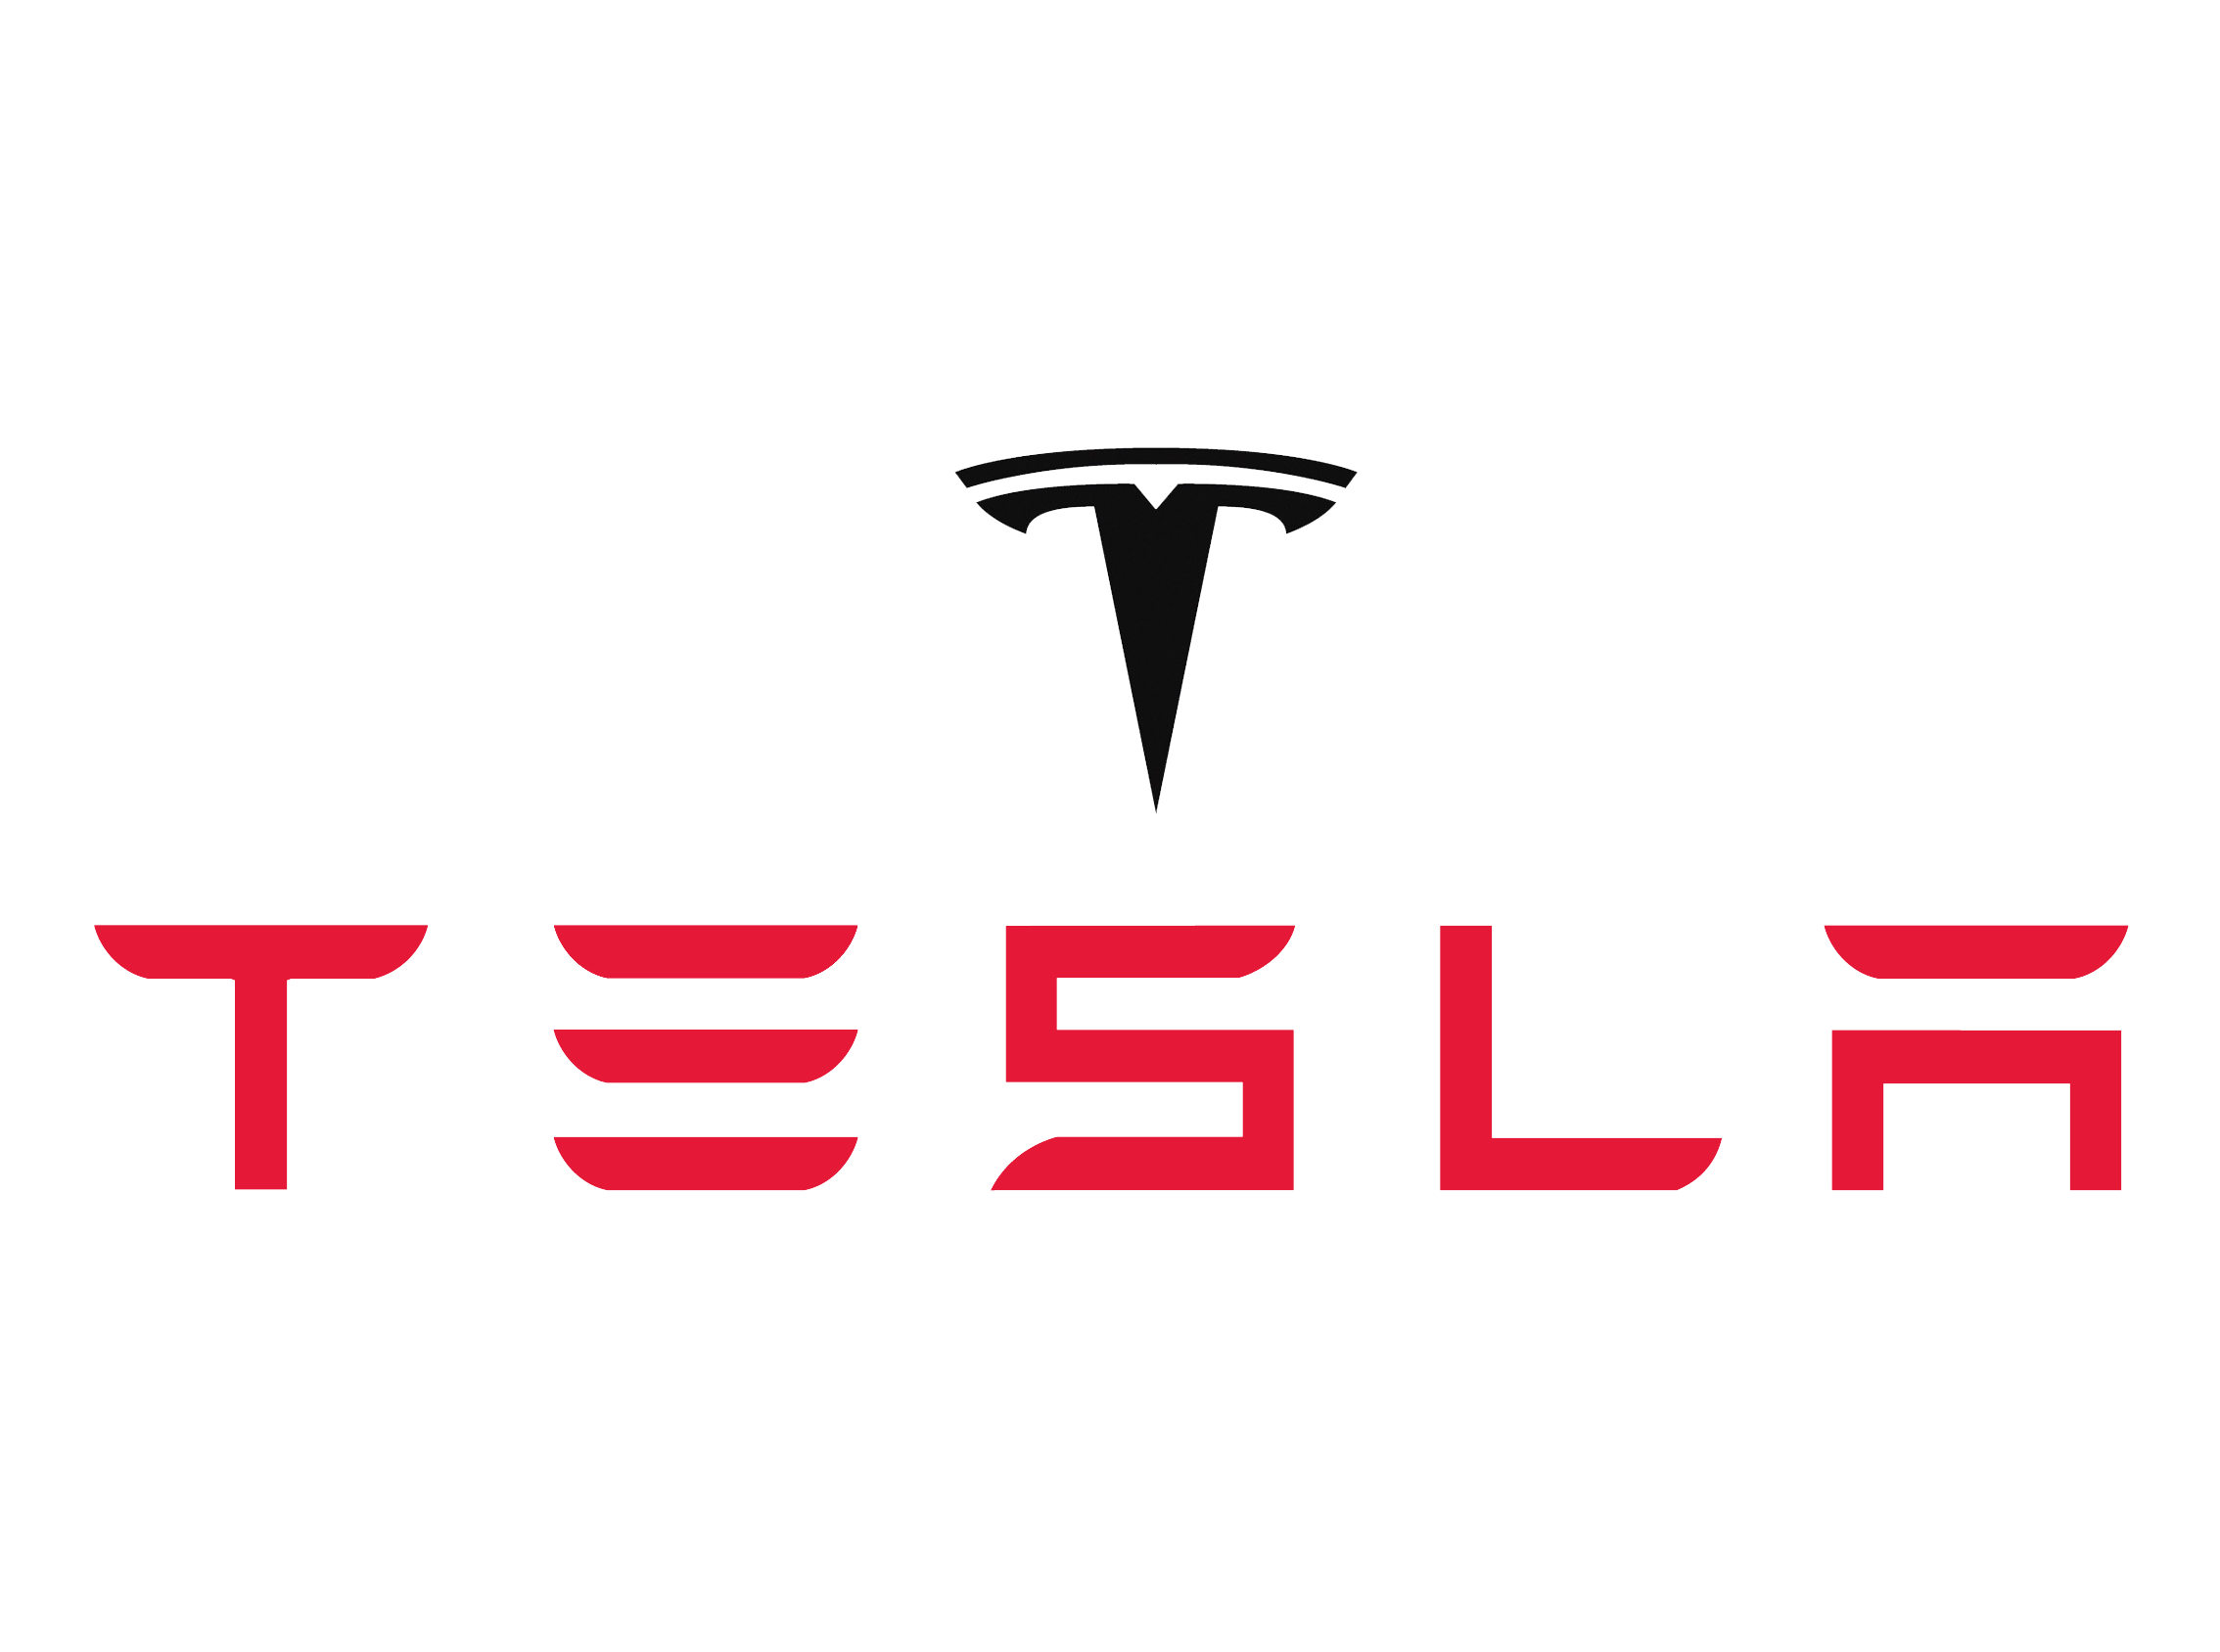 Tesla Logo PNG Image File